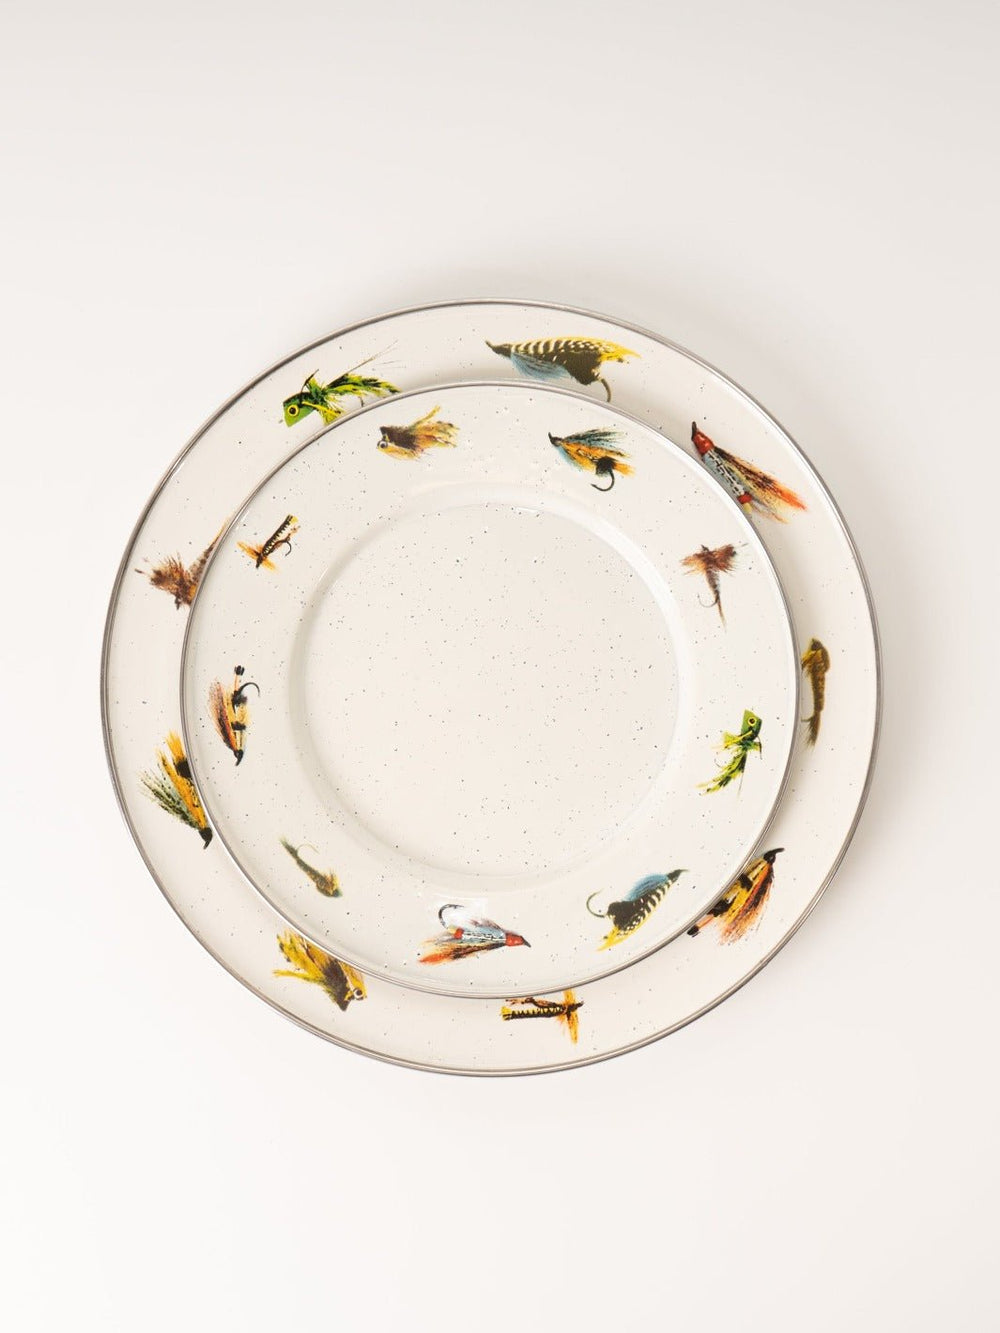 Fly Fishing Enamelware Dinner Plate - Heyday